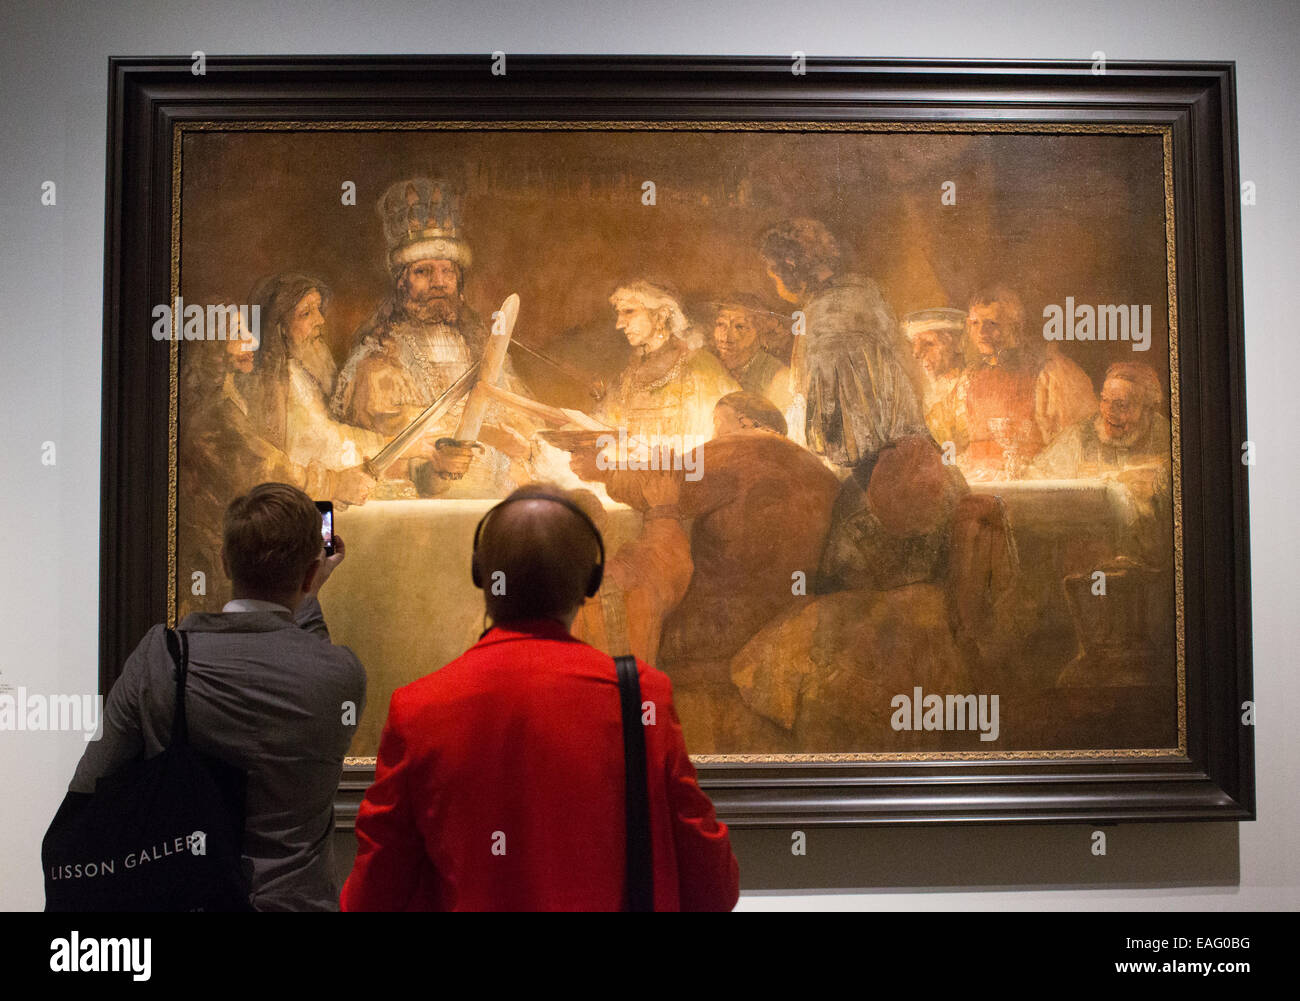 Pinturas de Rembrandt Harmenszoon van Rijn en la Galería Nacional de Londres Foto de stock